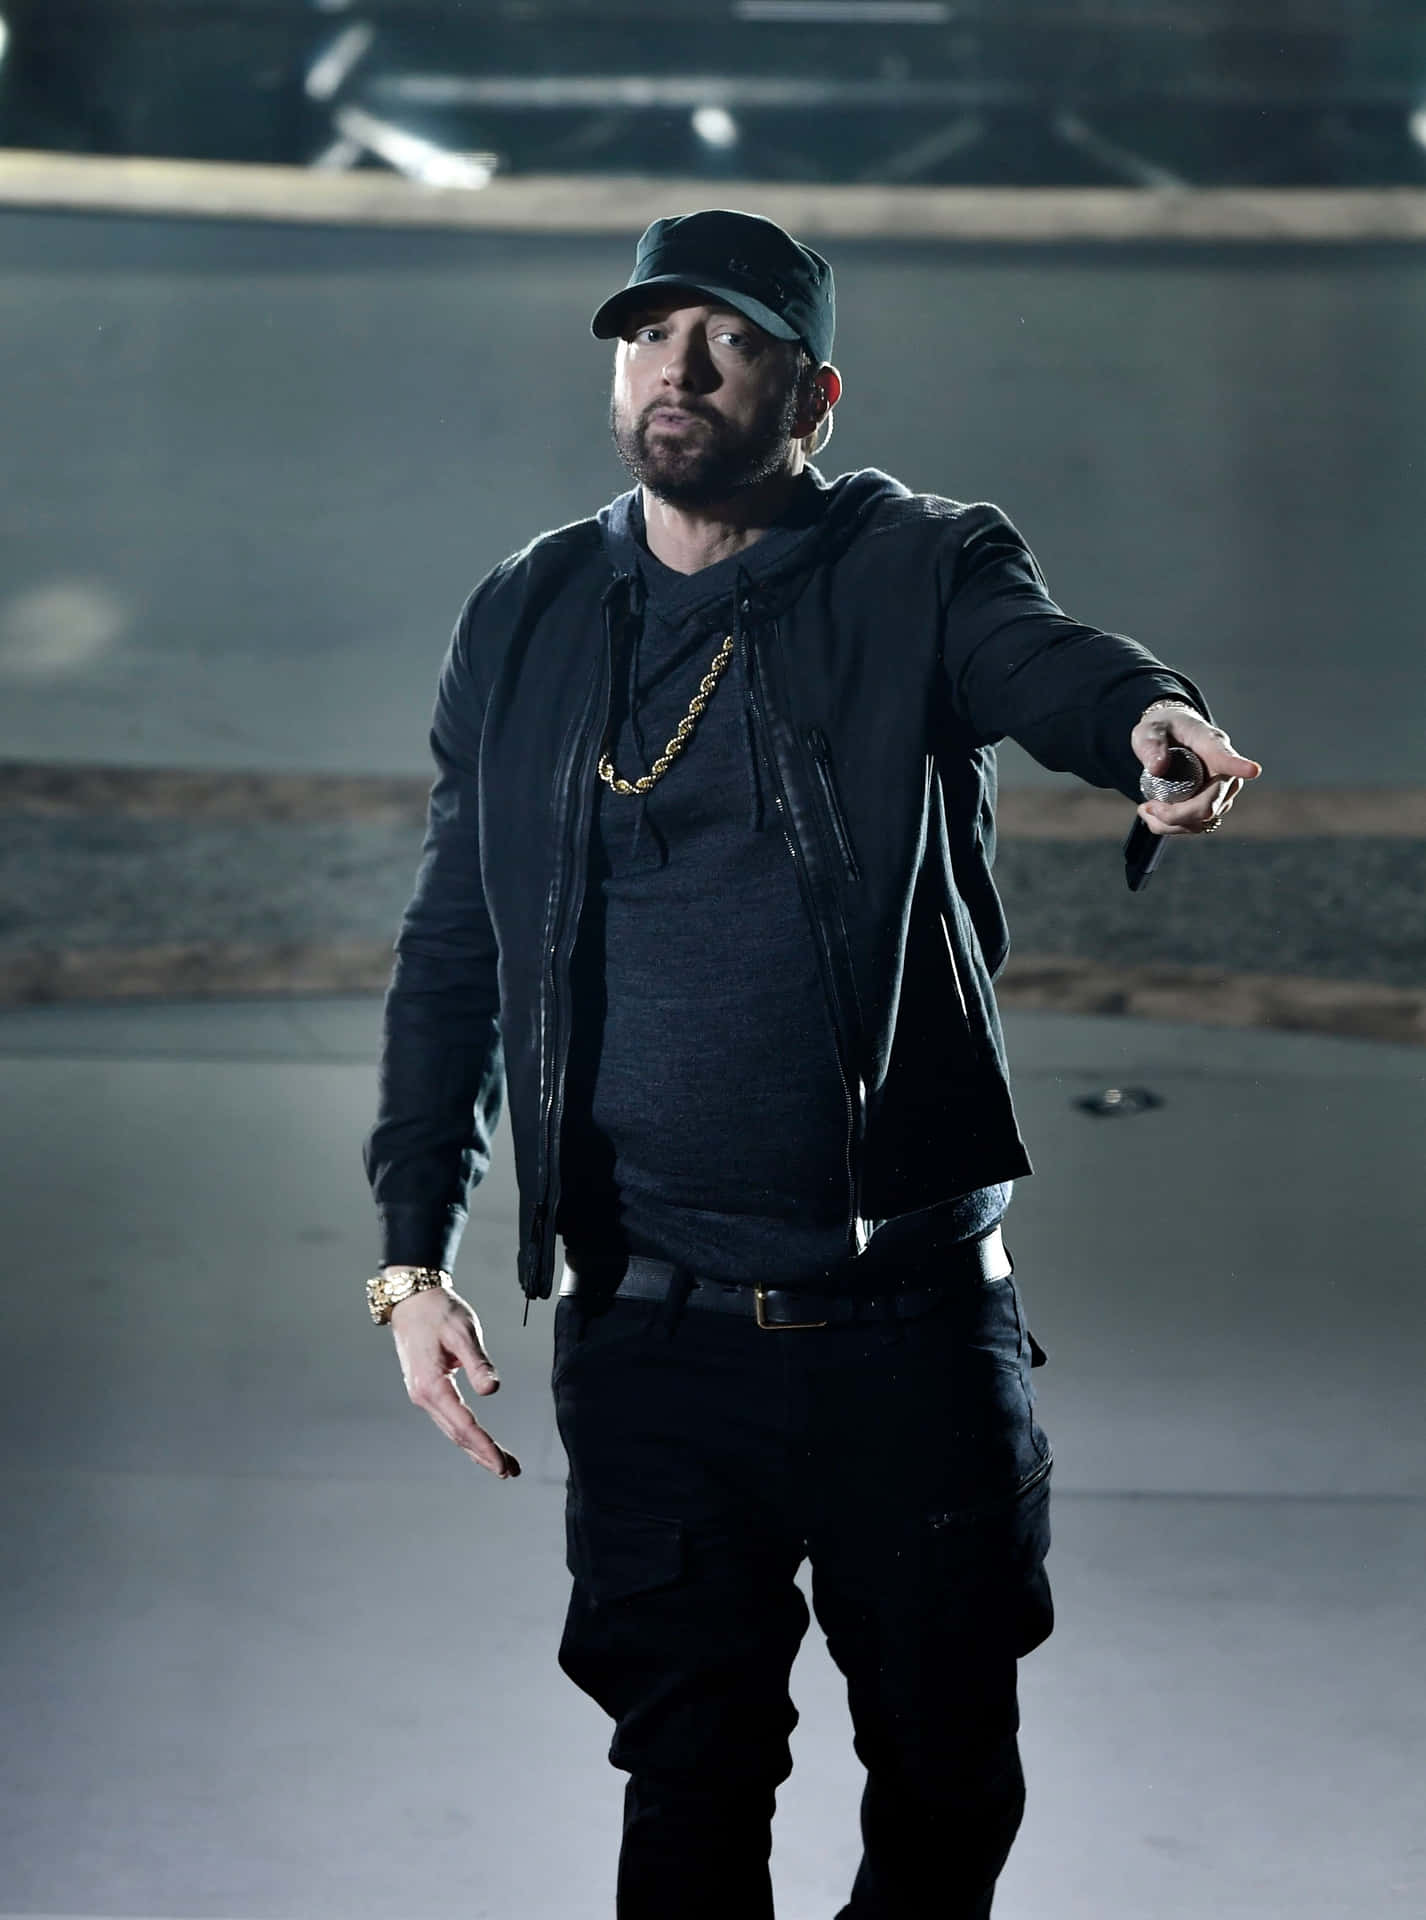 Eminembild I Storlek 3370 X 4537